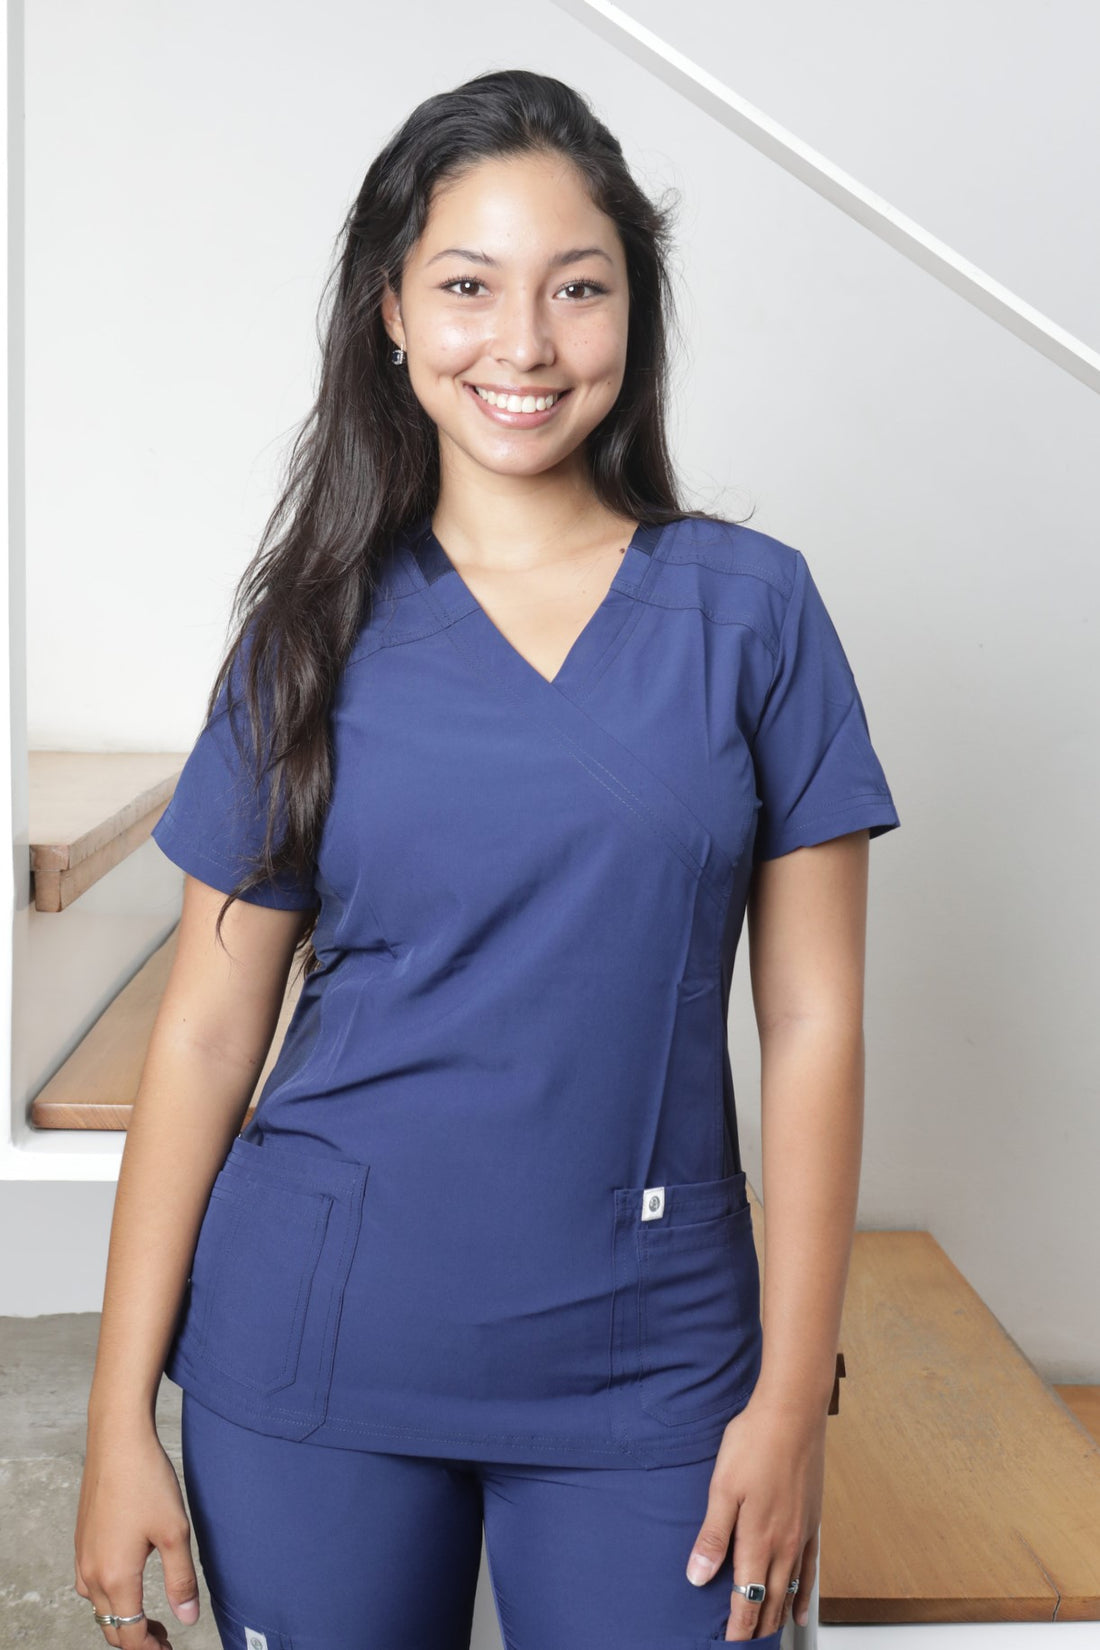 El uniforme perfecto: Elementos clave de los trajes clínicos para enfermeras